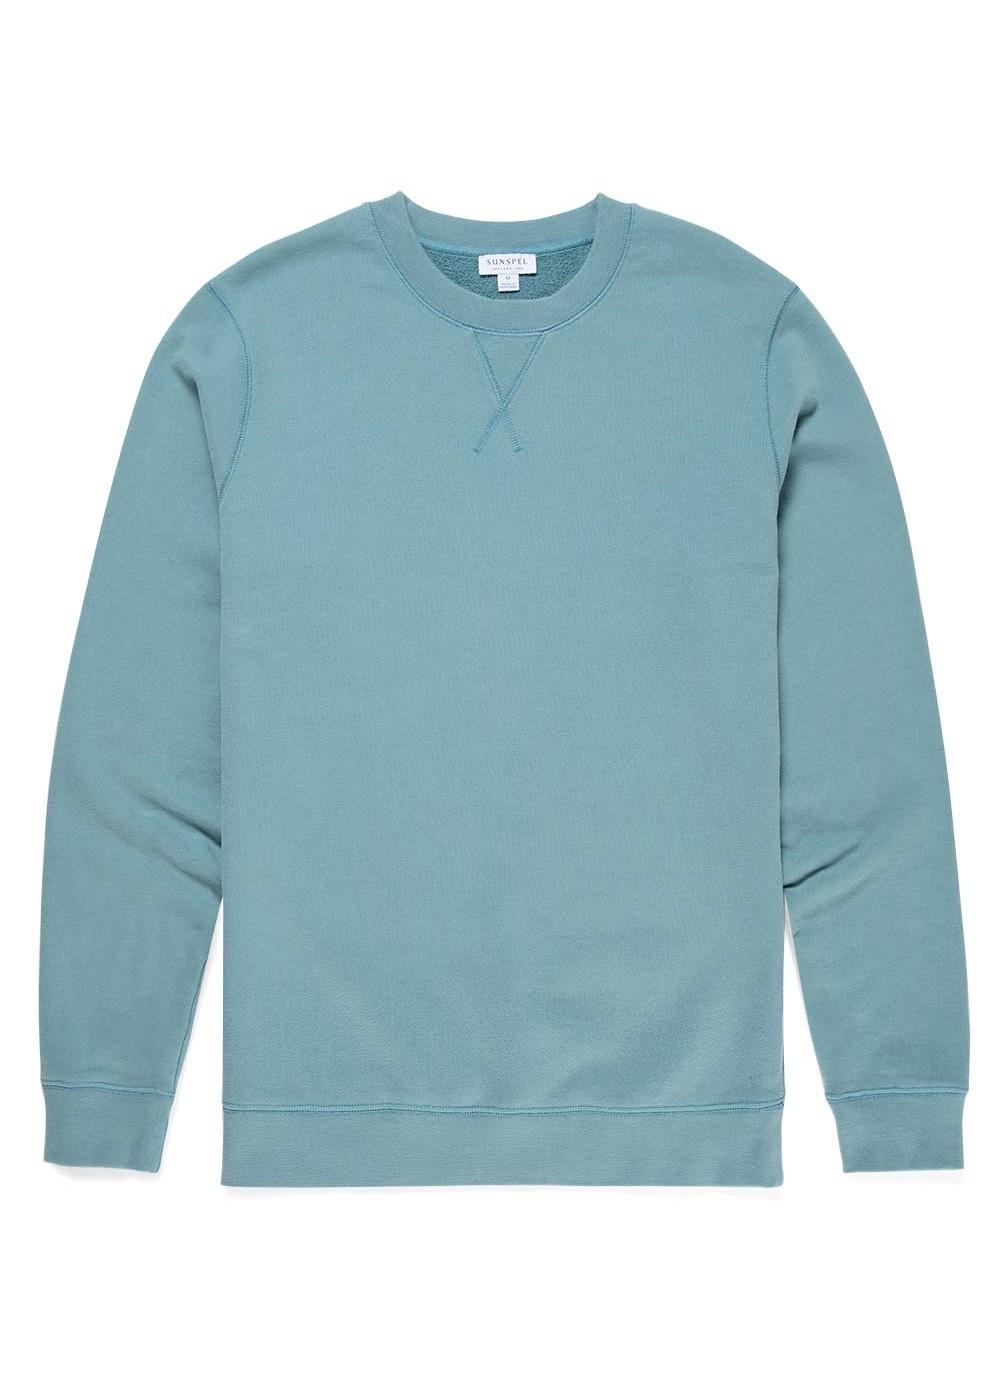 Sunspel Men's Cotton Loopback Sweatshirt In Aqua in Blue for Men - Lyst